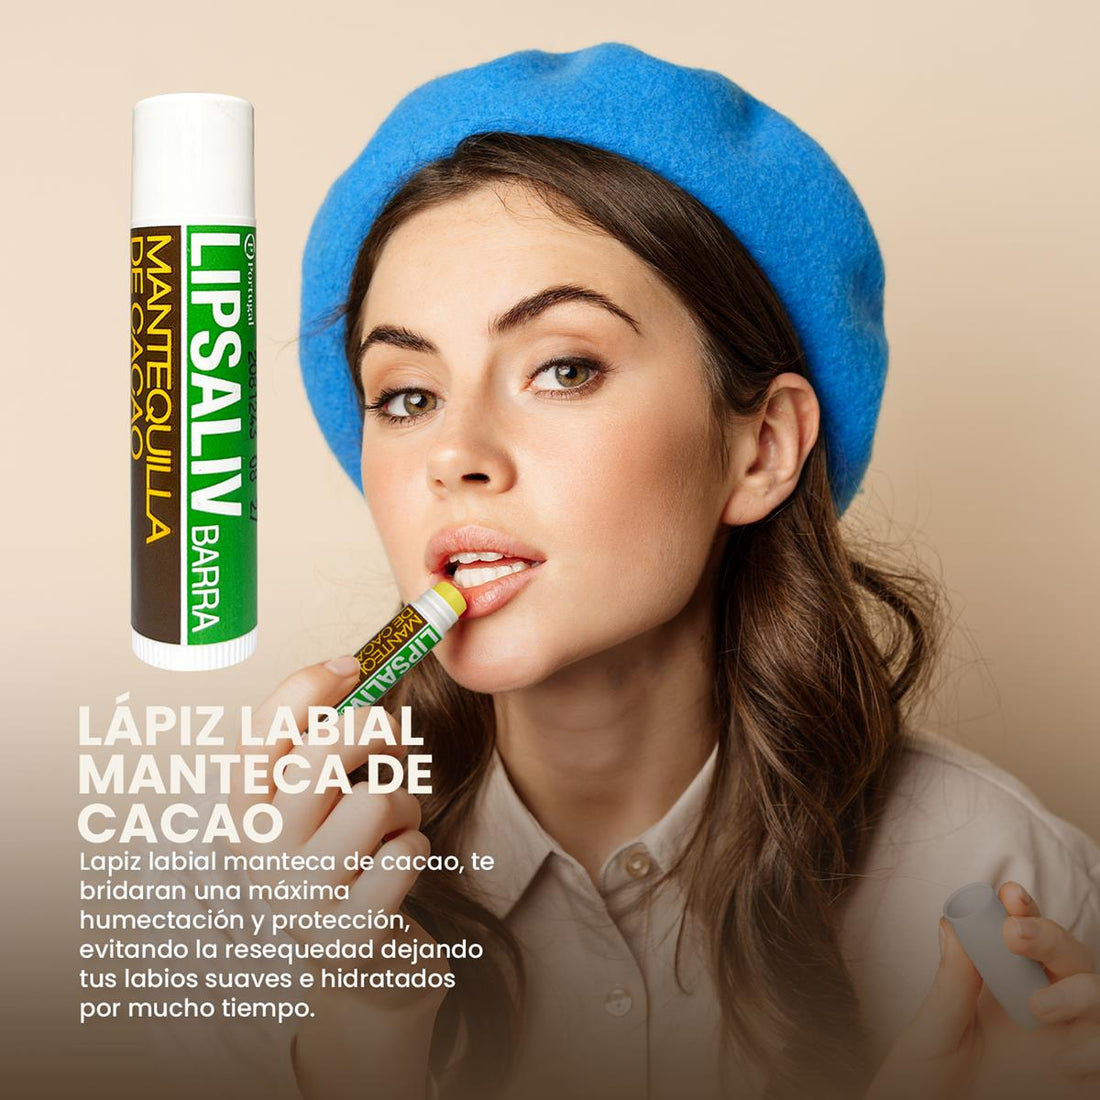 Lapiz labial manteca de cacao 5.3g – Portugal